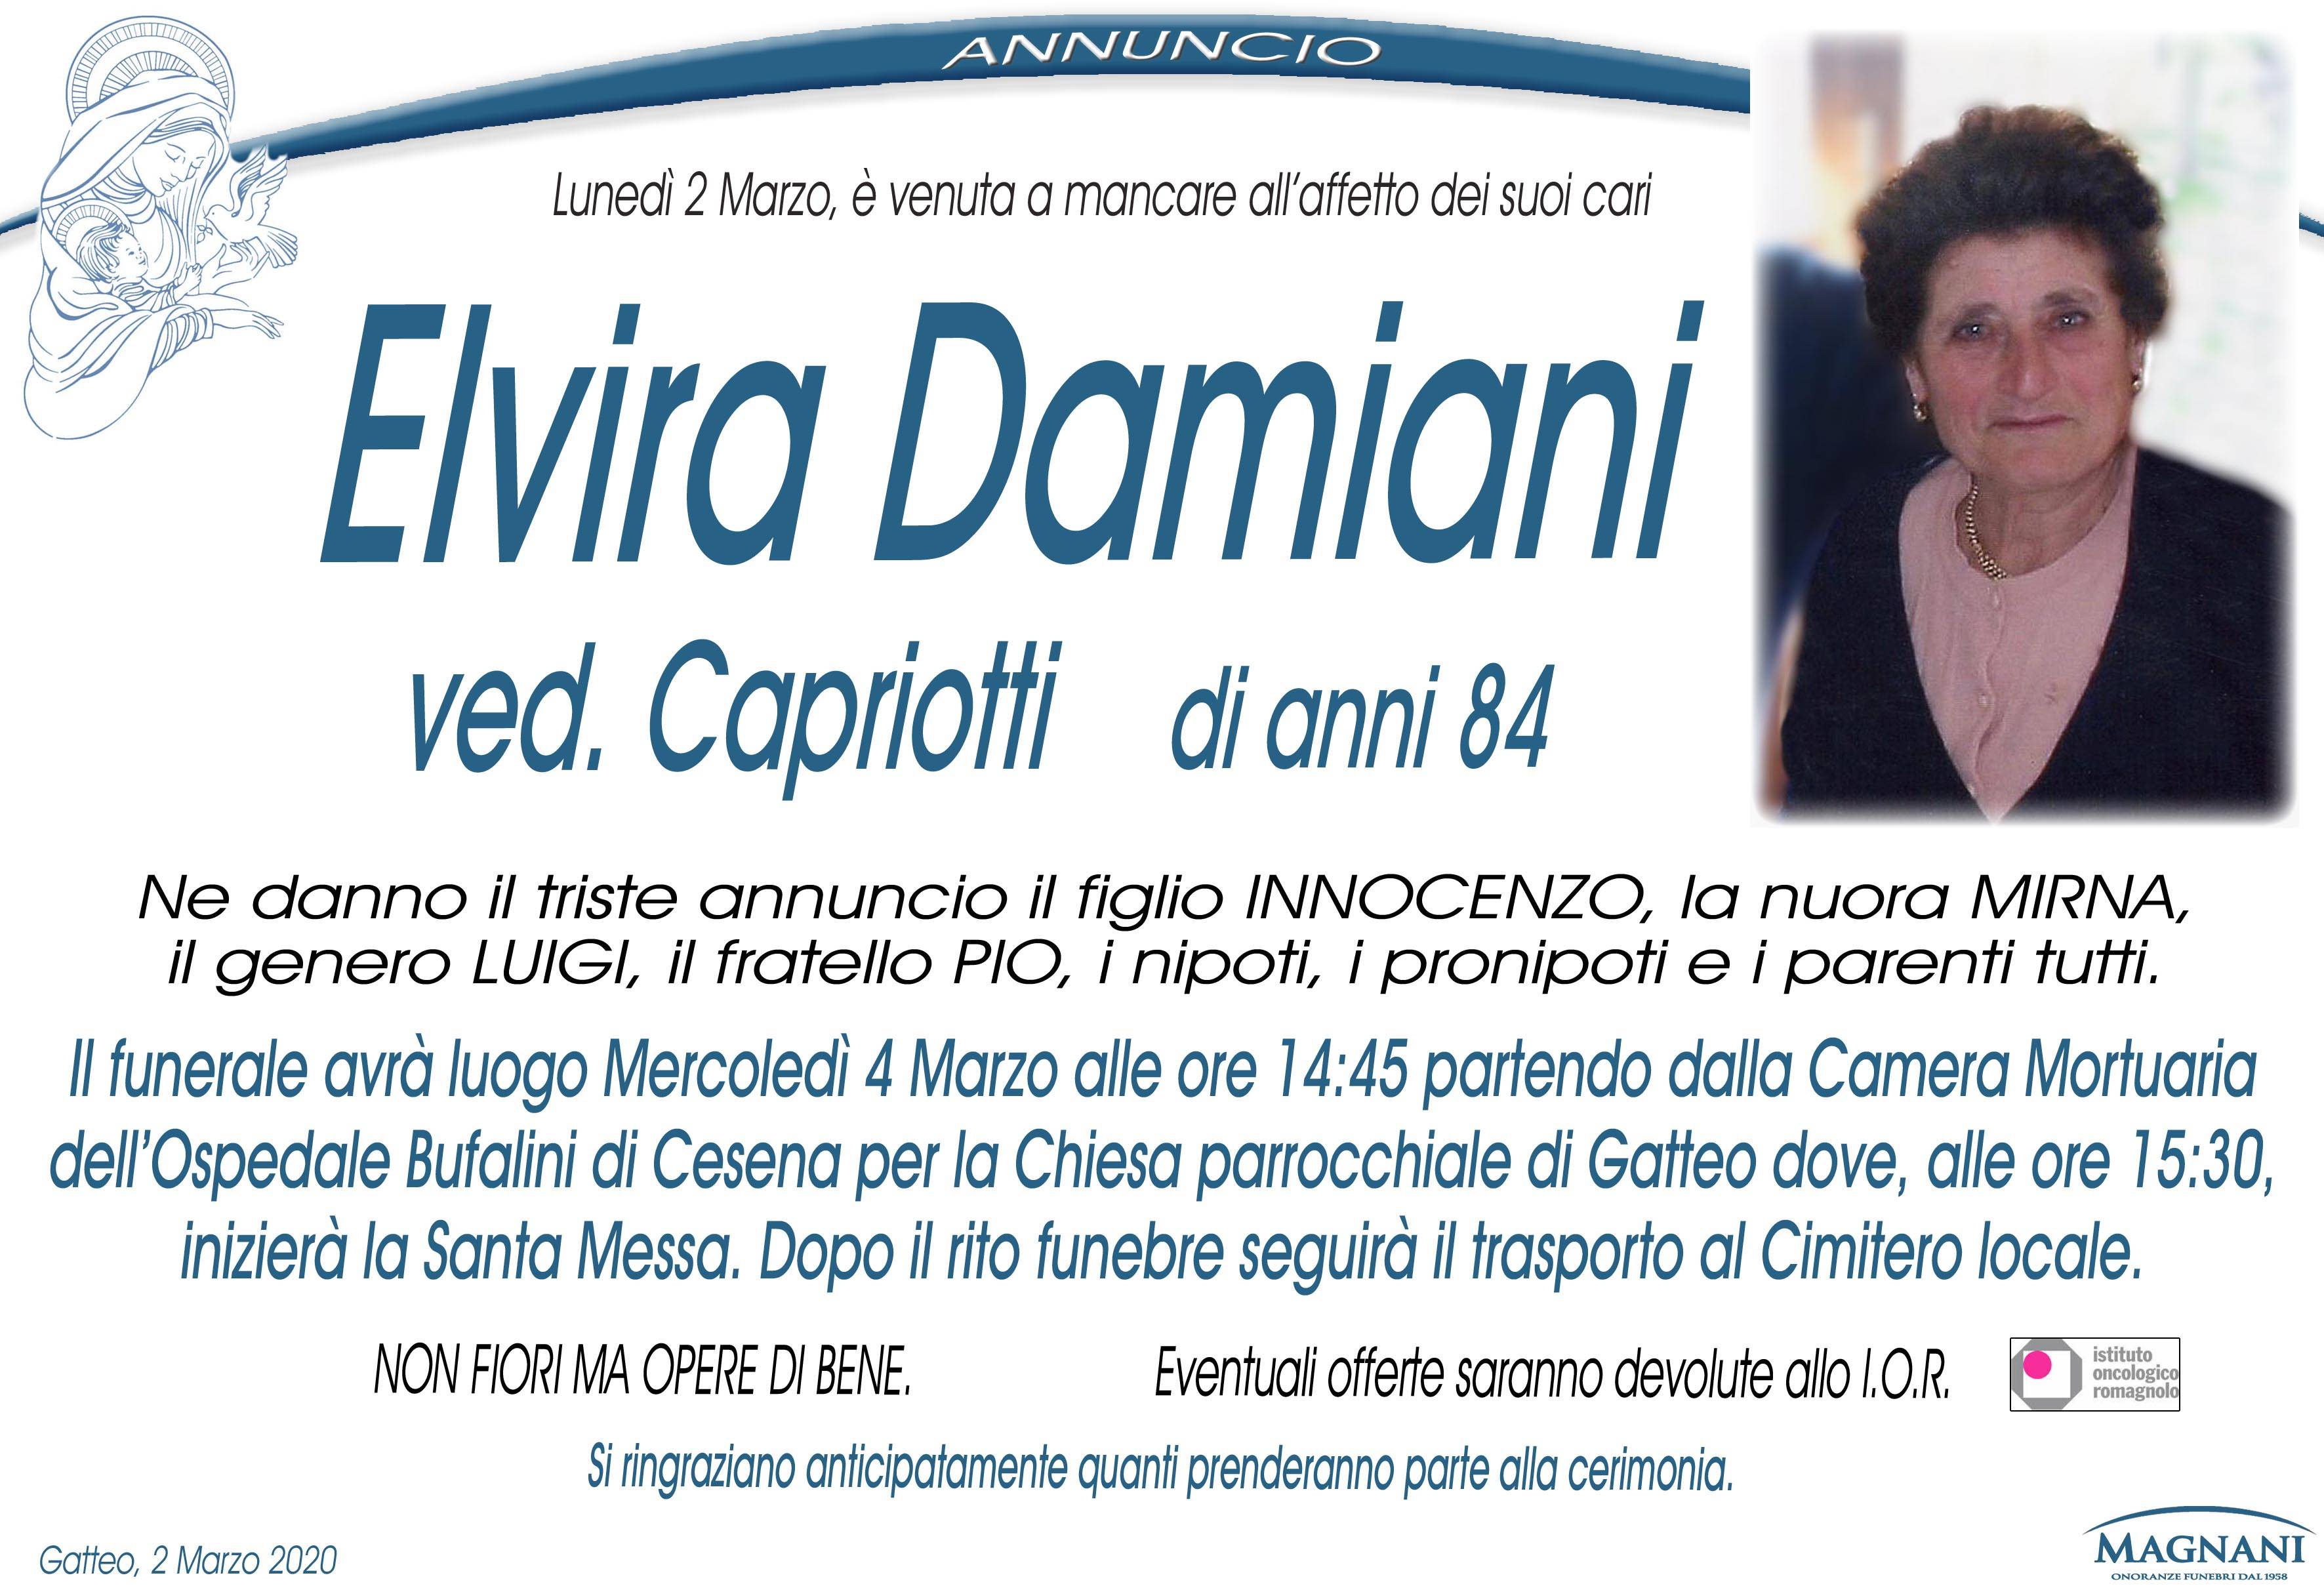 Elvira Damiani